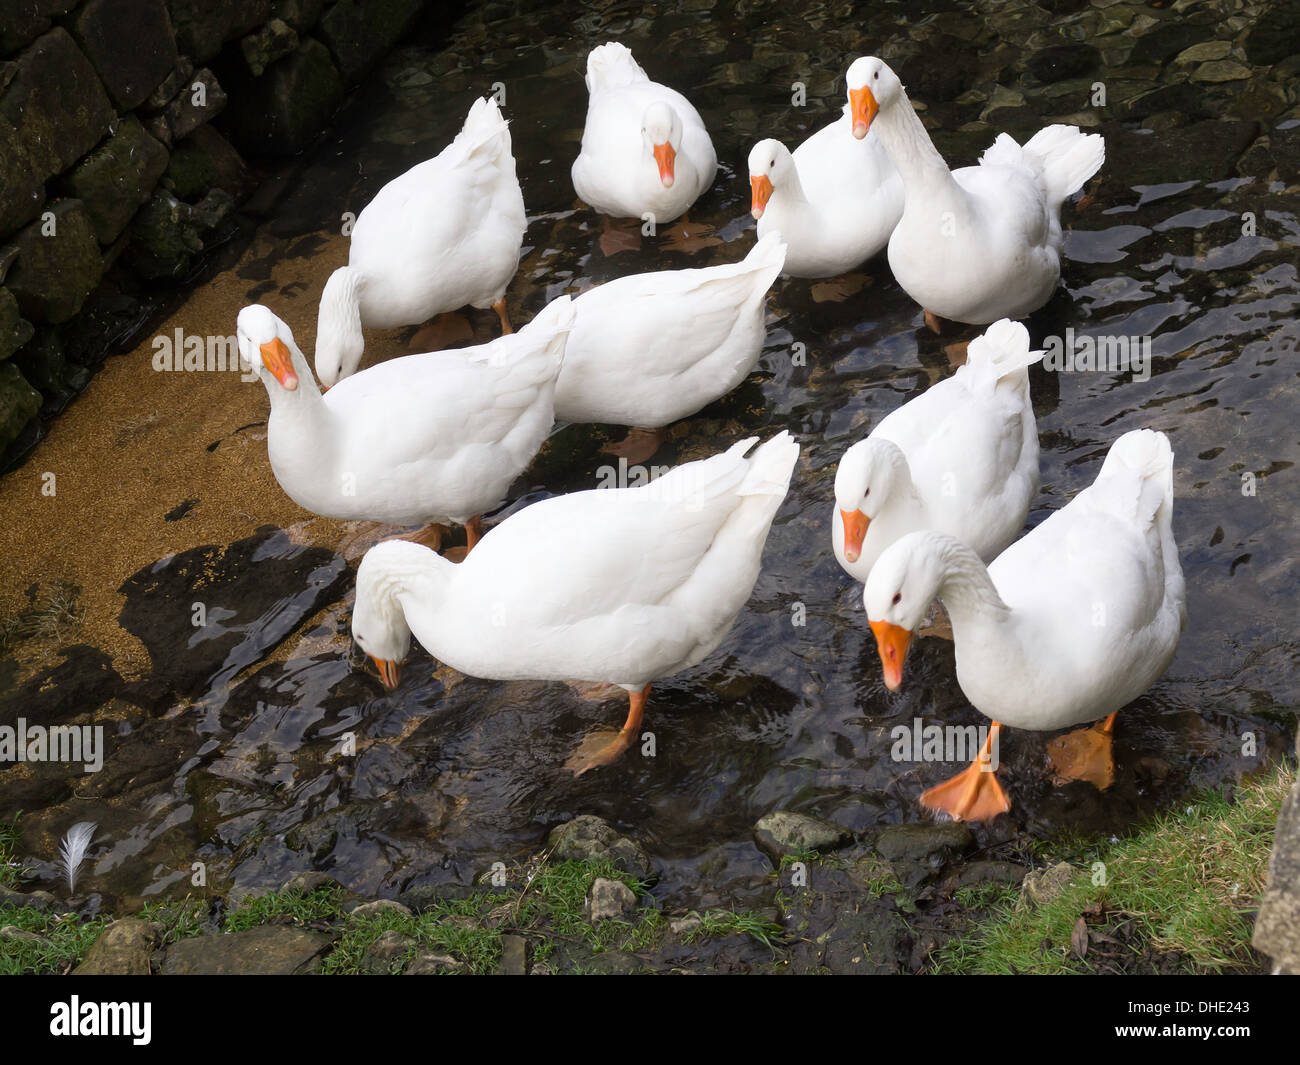 Un petit troupeau d'oies blanches basse-cour intérieure debout dans un ruisseau peu profond Banque D'Images